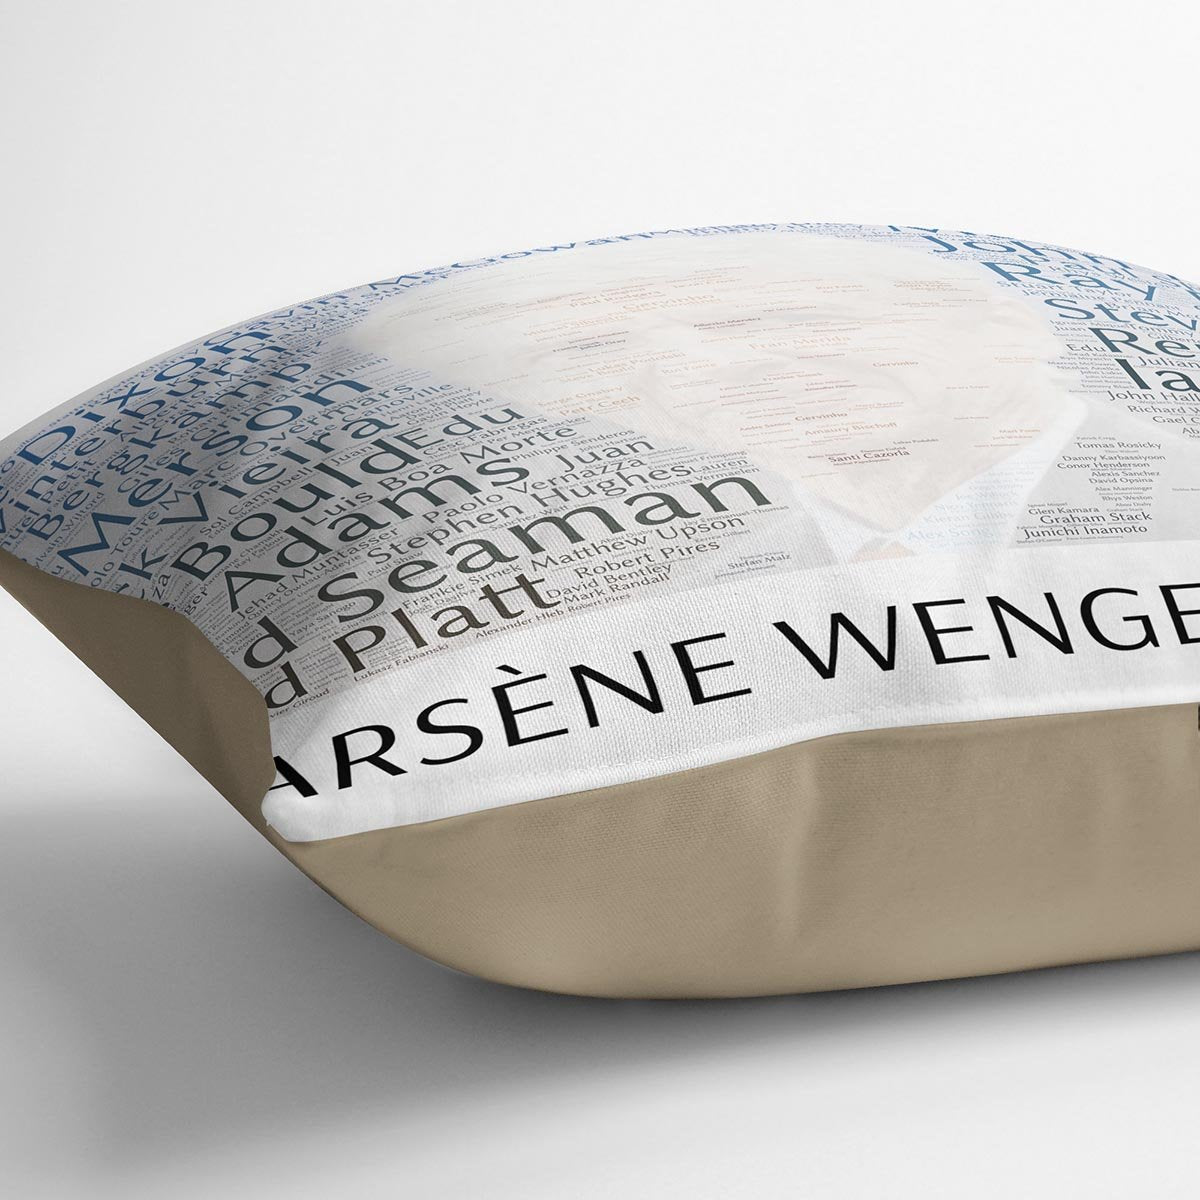 Arsene Wengers 222 Players Cushion